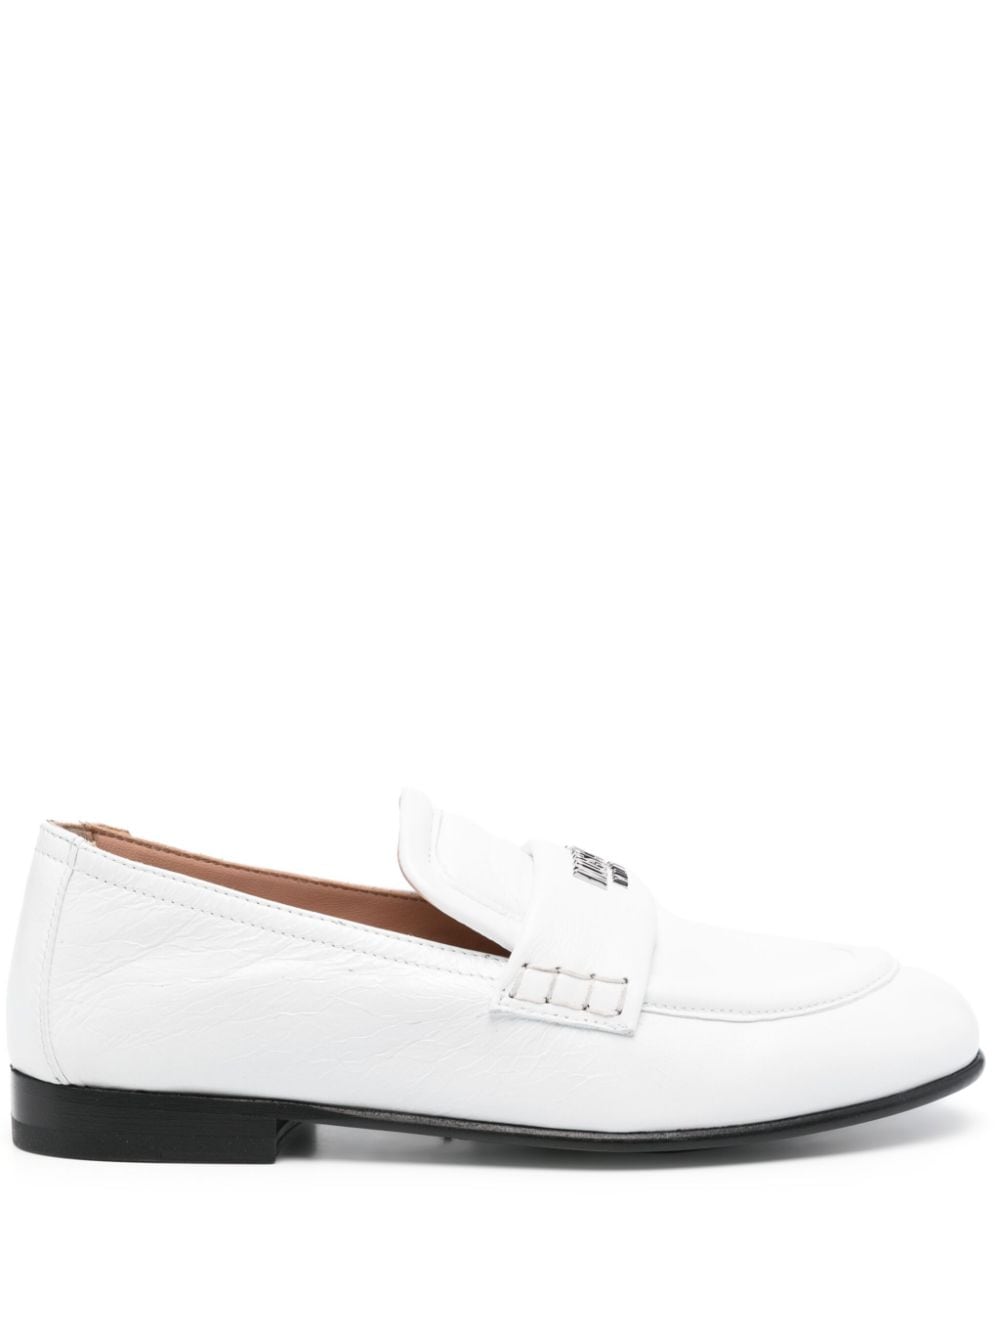 Moschino Logo字母皮质乐福鞋 In White